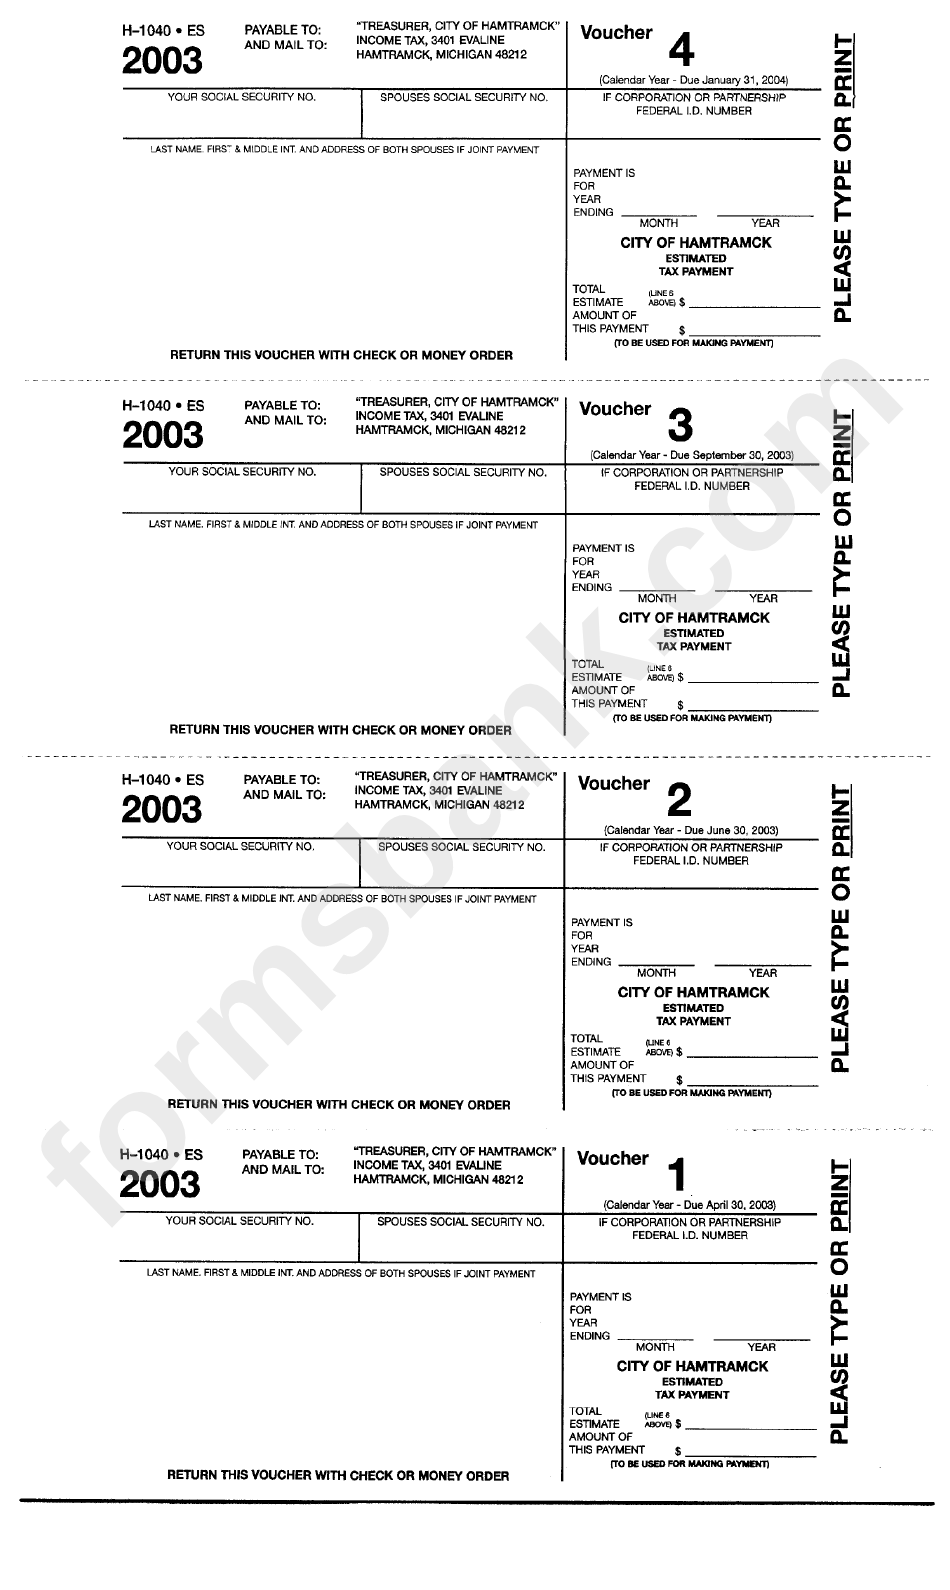 form-h-1040-es-estimated-tax-payment-voucher-2003-printable-pdf